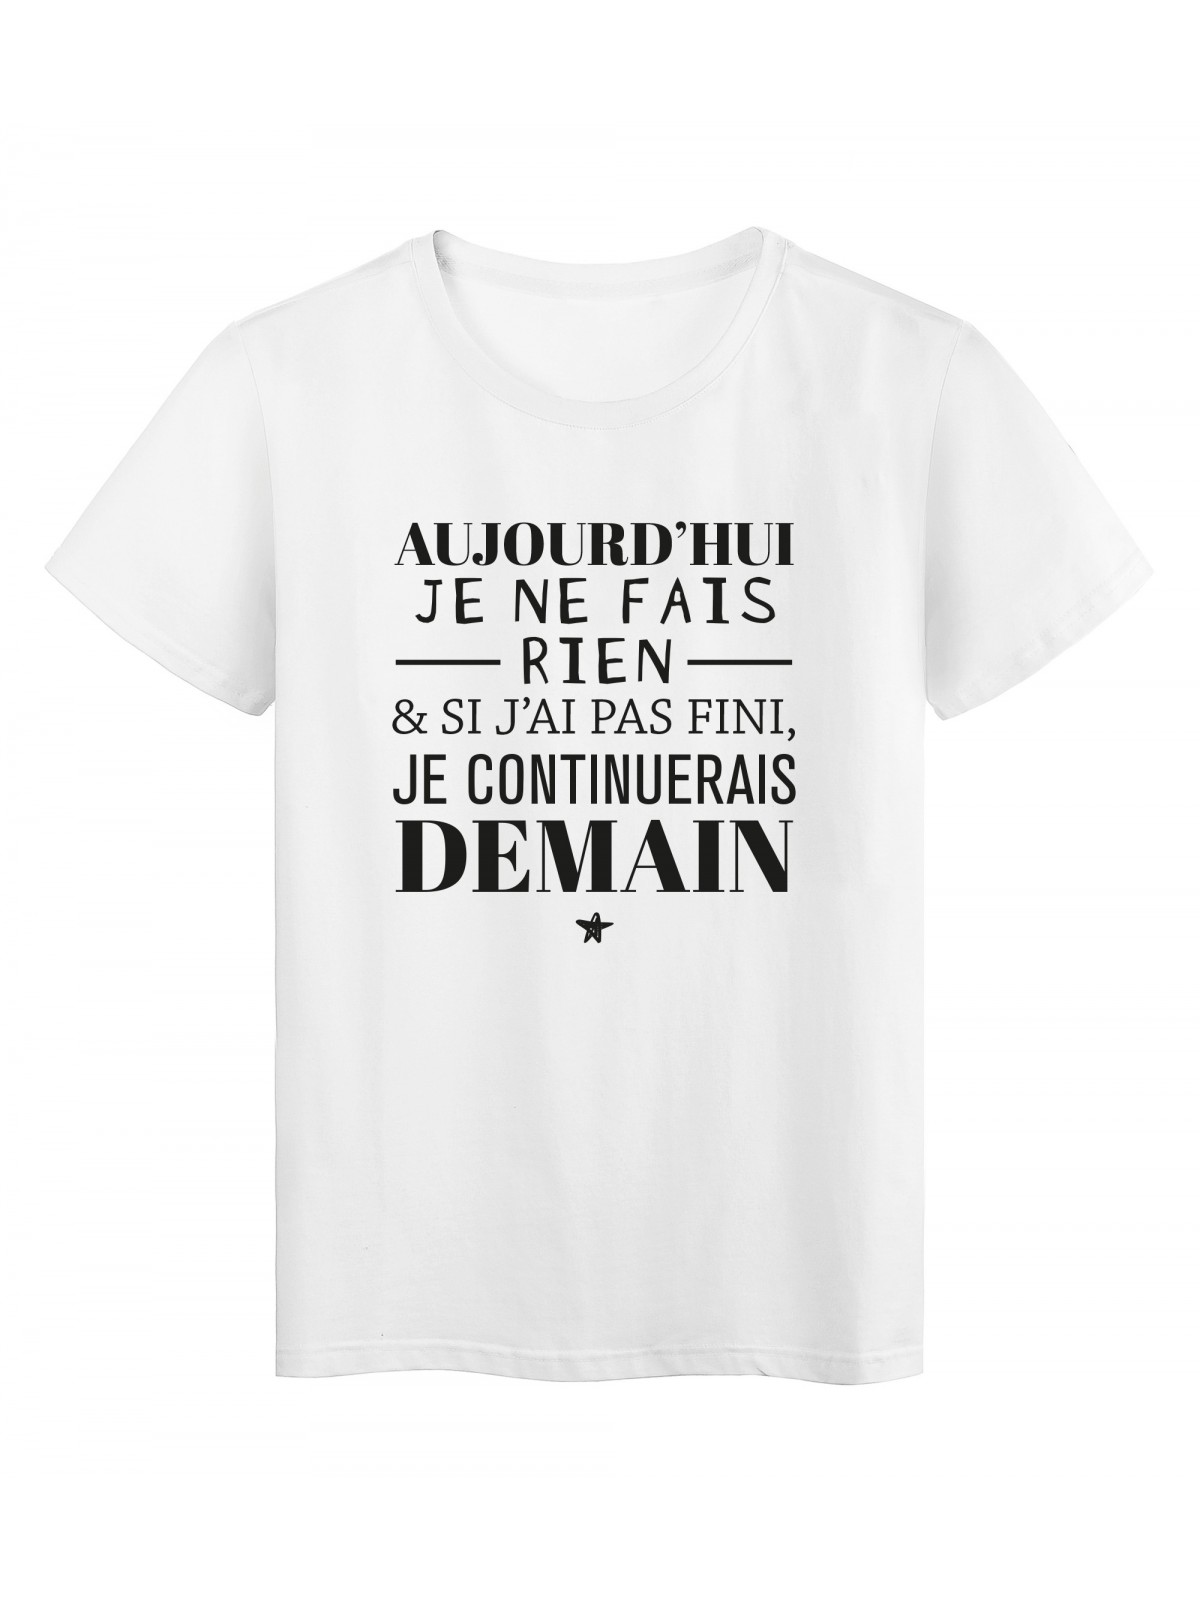 T-Shirt imprimÃ© citation humour Aujourdhui je ne fais rien